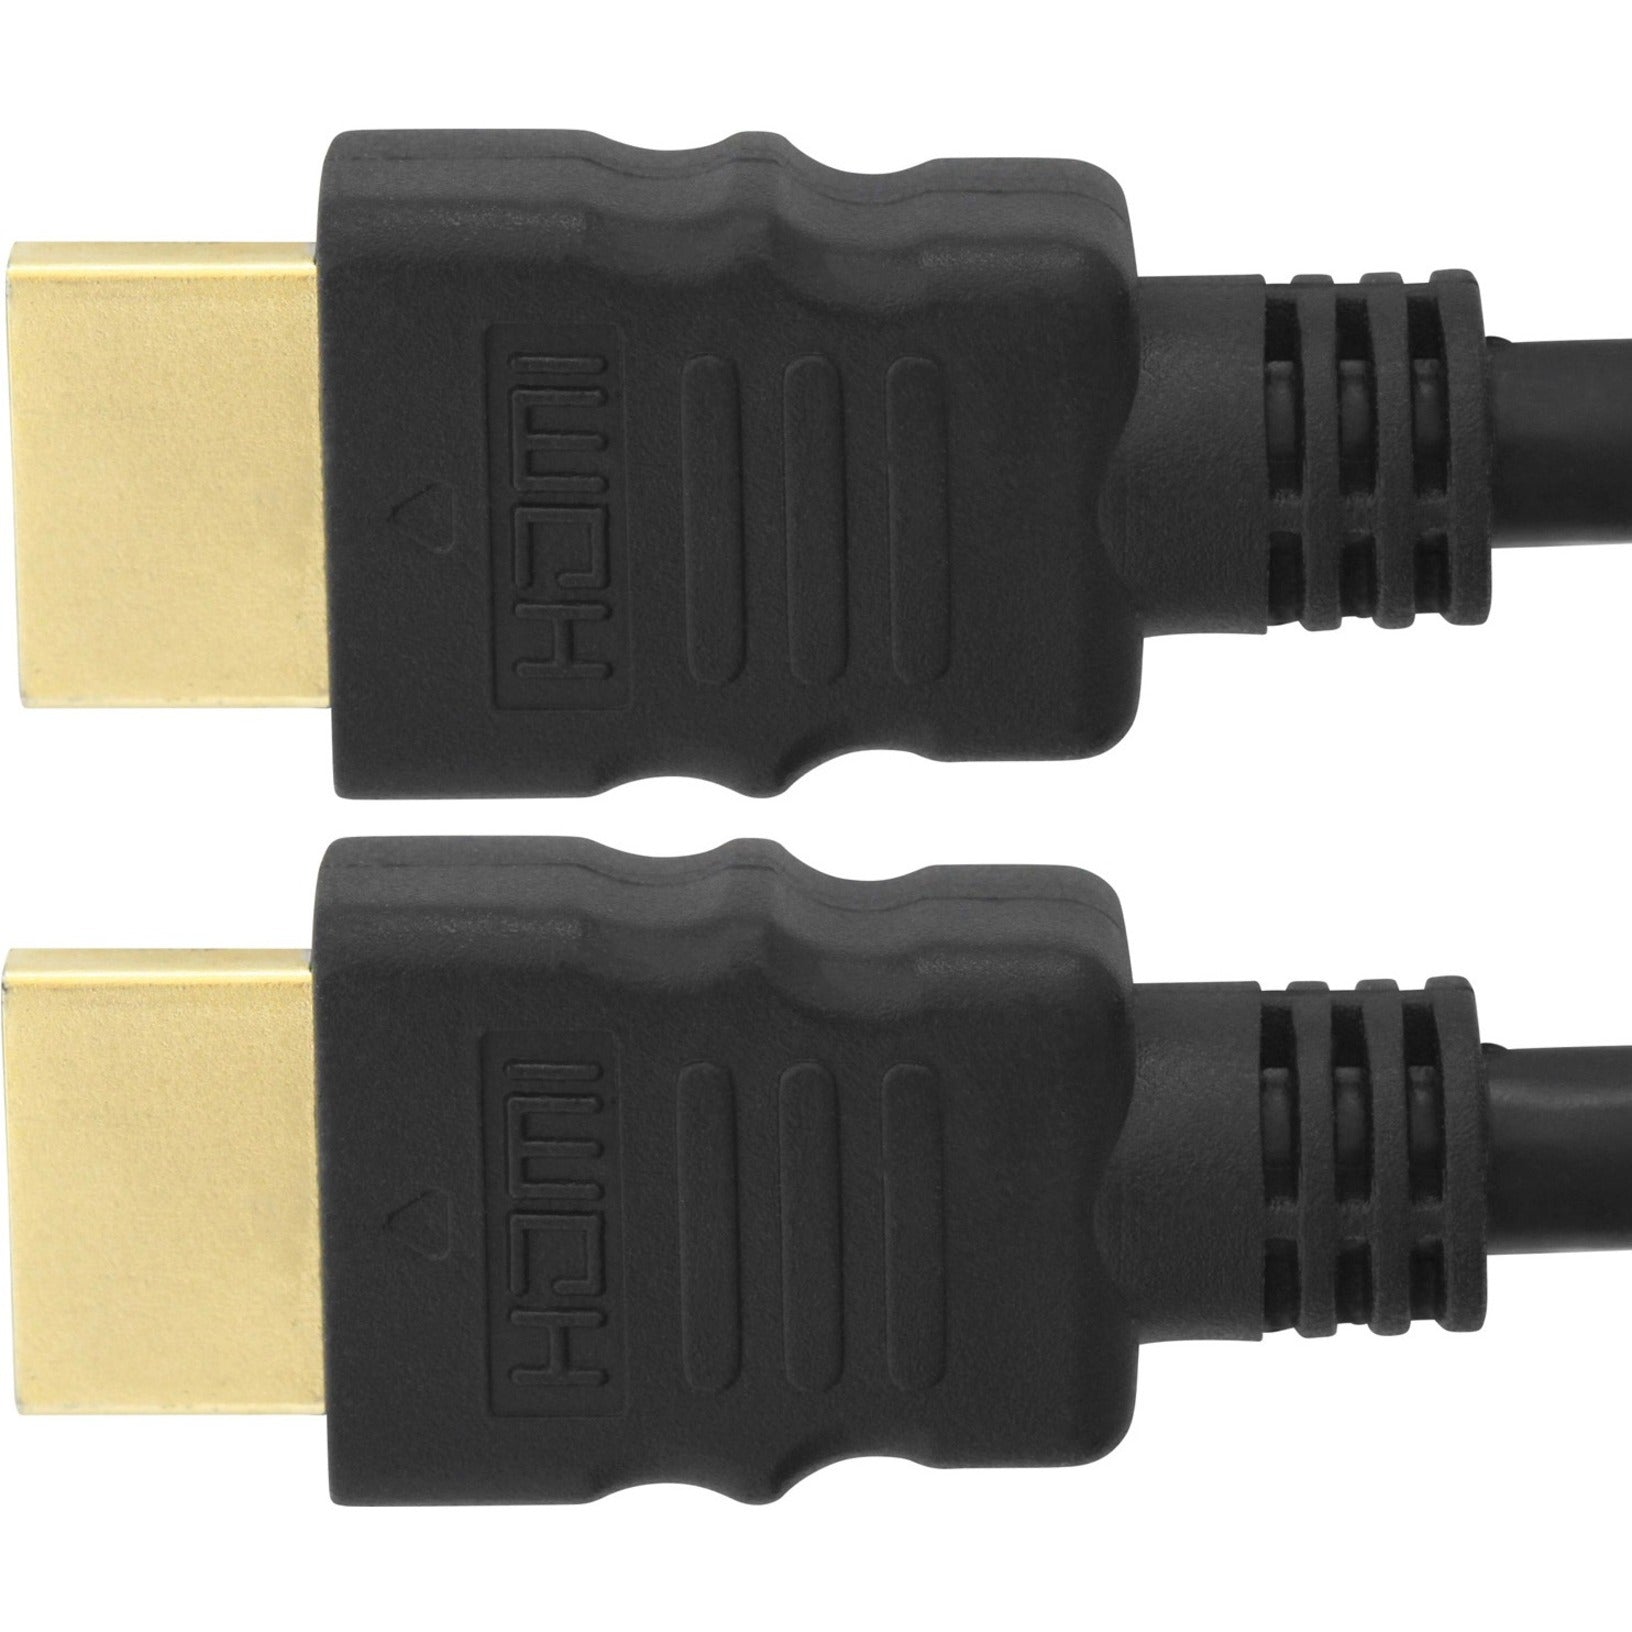 4XEM 4XHDMIMM15FT 15ft 5m High Speed HDMI Cable 1080p 3D Ethernet Audio Return Channel  - Marque: 4XEM - Câble HDMI haute vitesse de 15 pieds (5 mètres) 1080p 3D Ethernet canal de retour audio